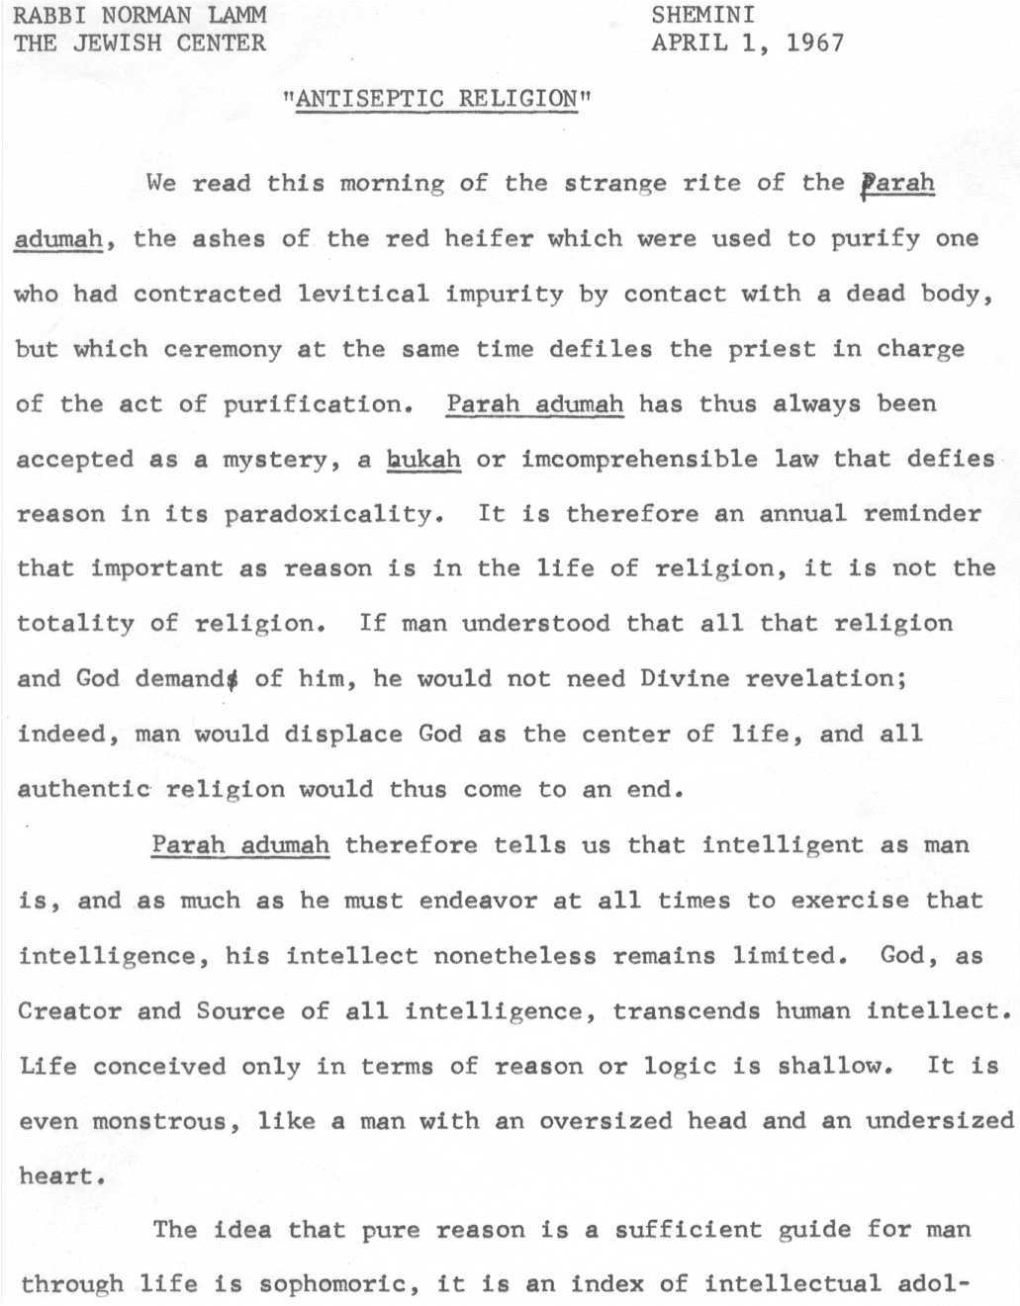 Rabbi Norman Lamm Shemini the Jewish Center April 1, 1967 "Antiseptic Religion"